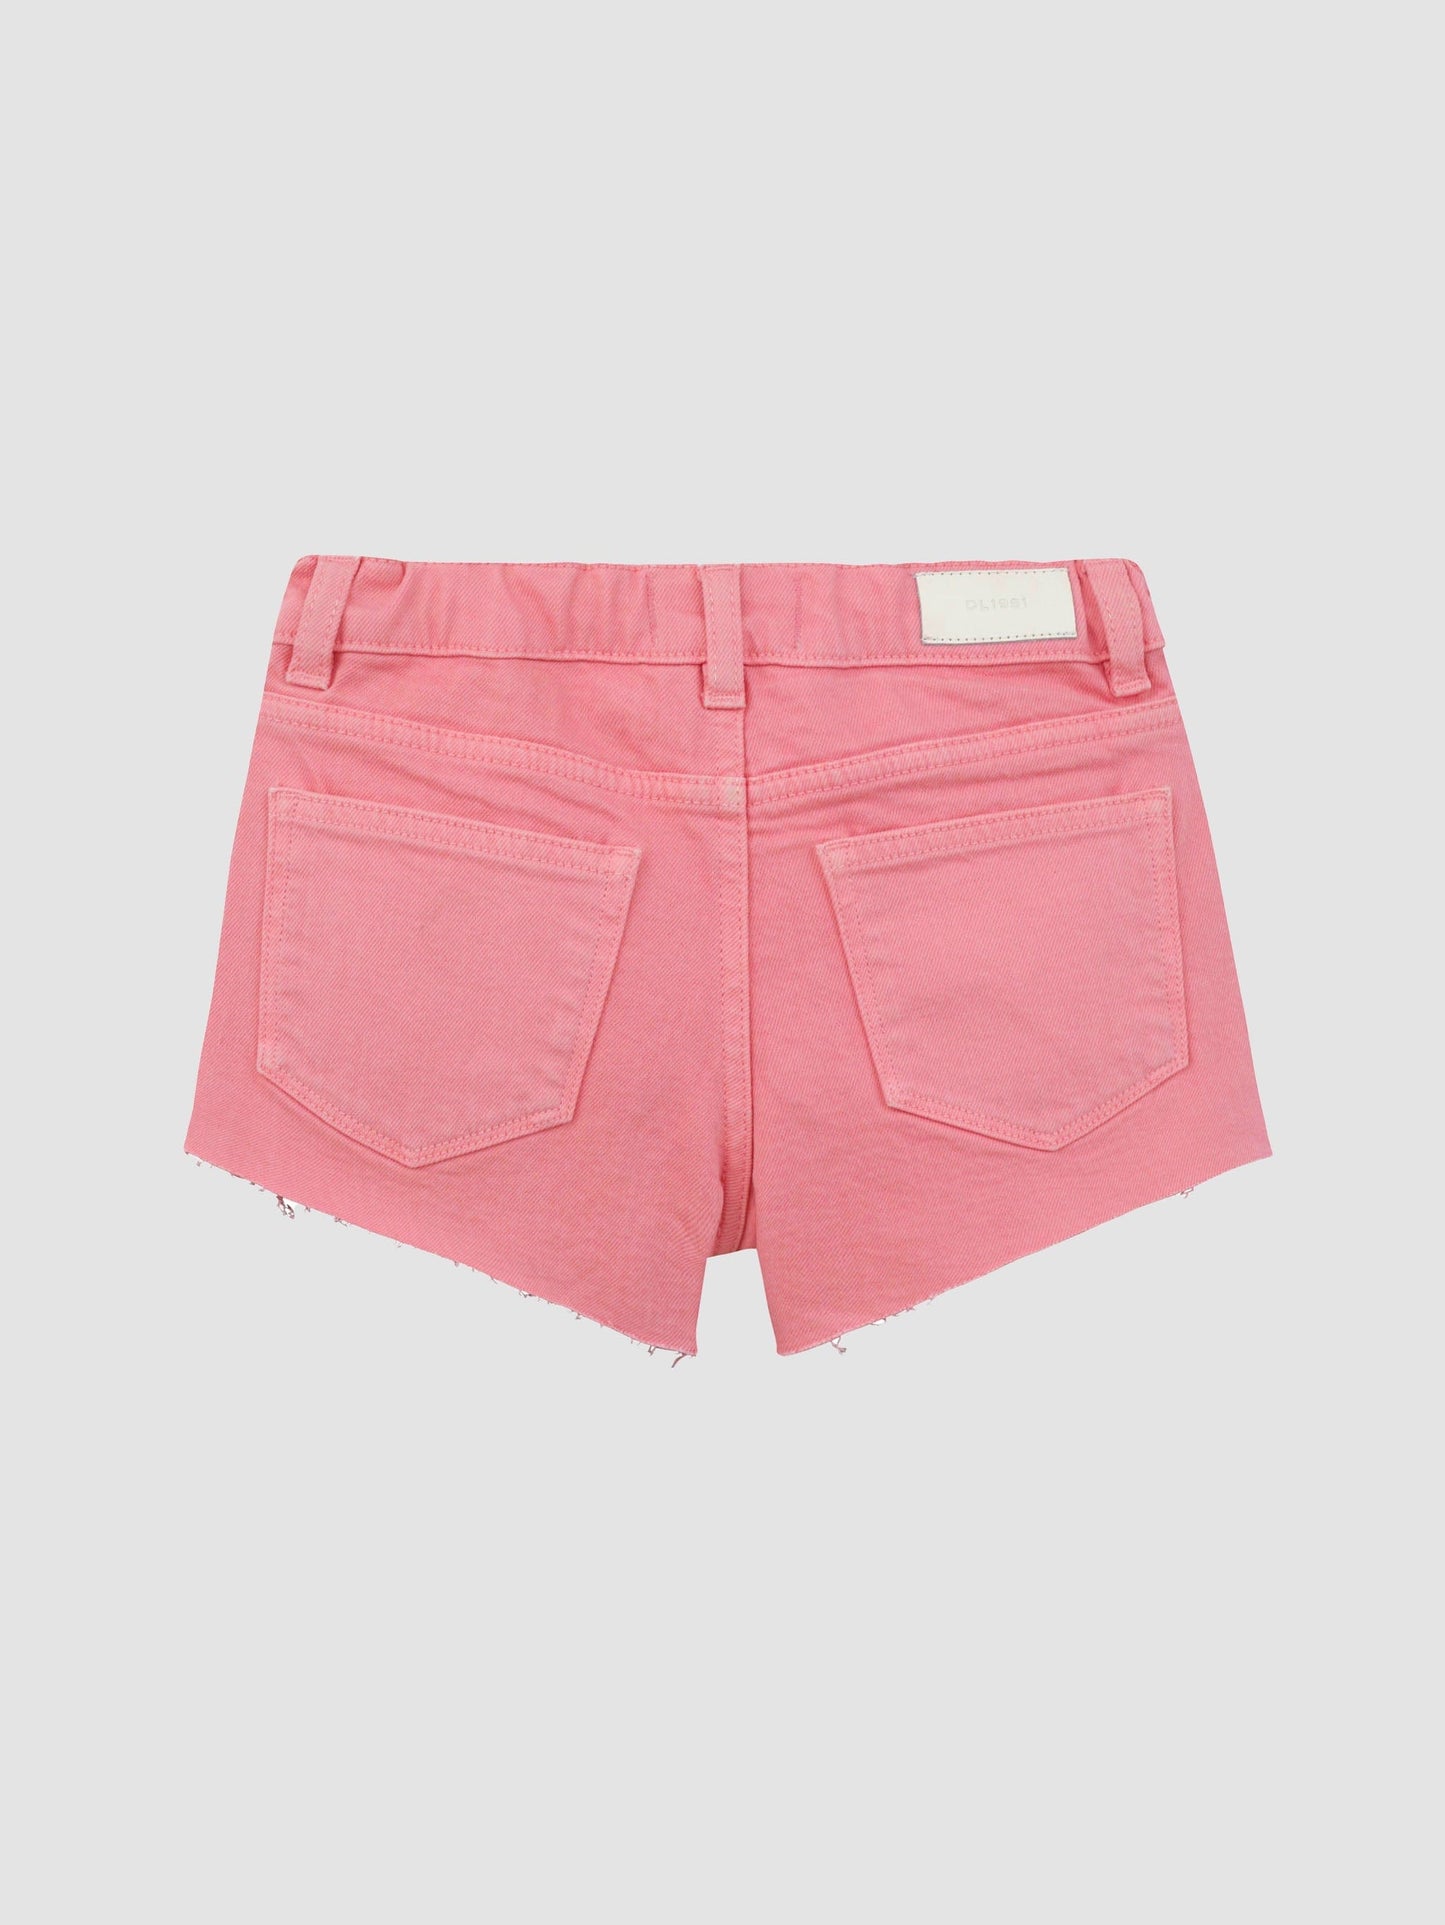 Lucy Cutoff Shorts - Flamingo